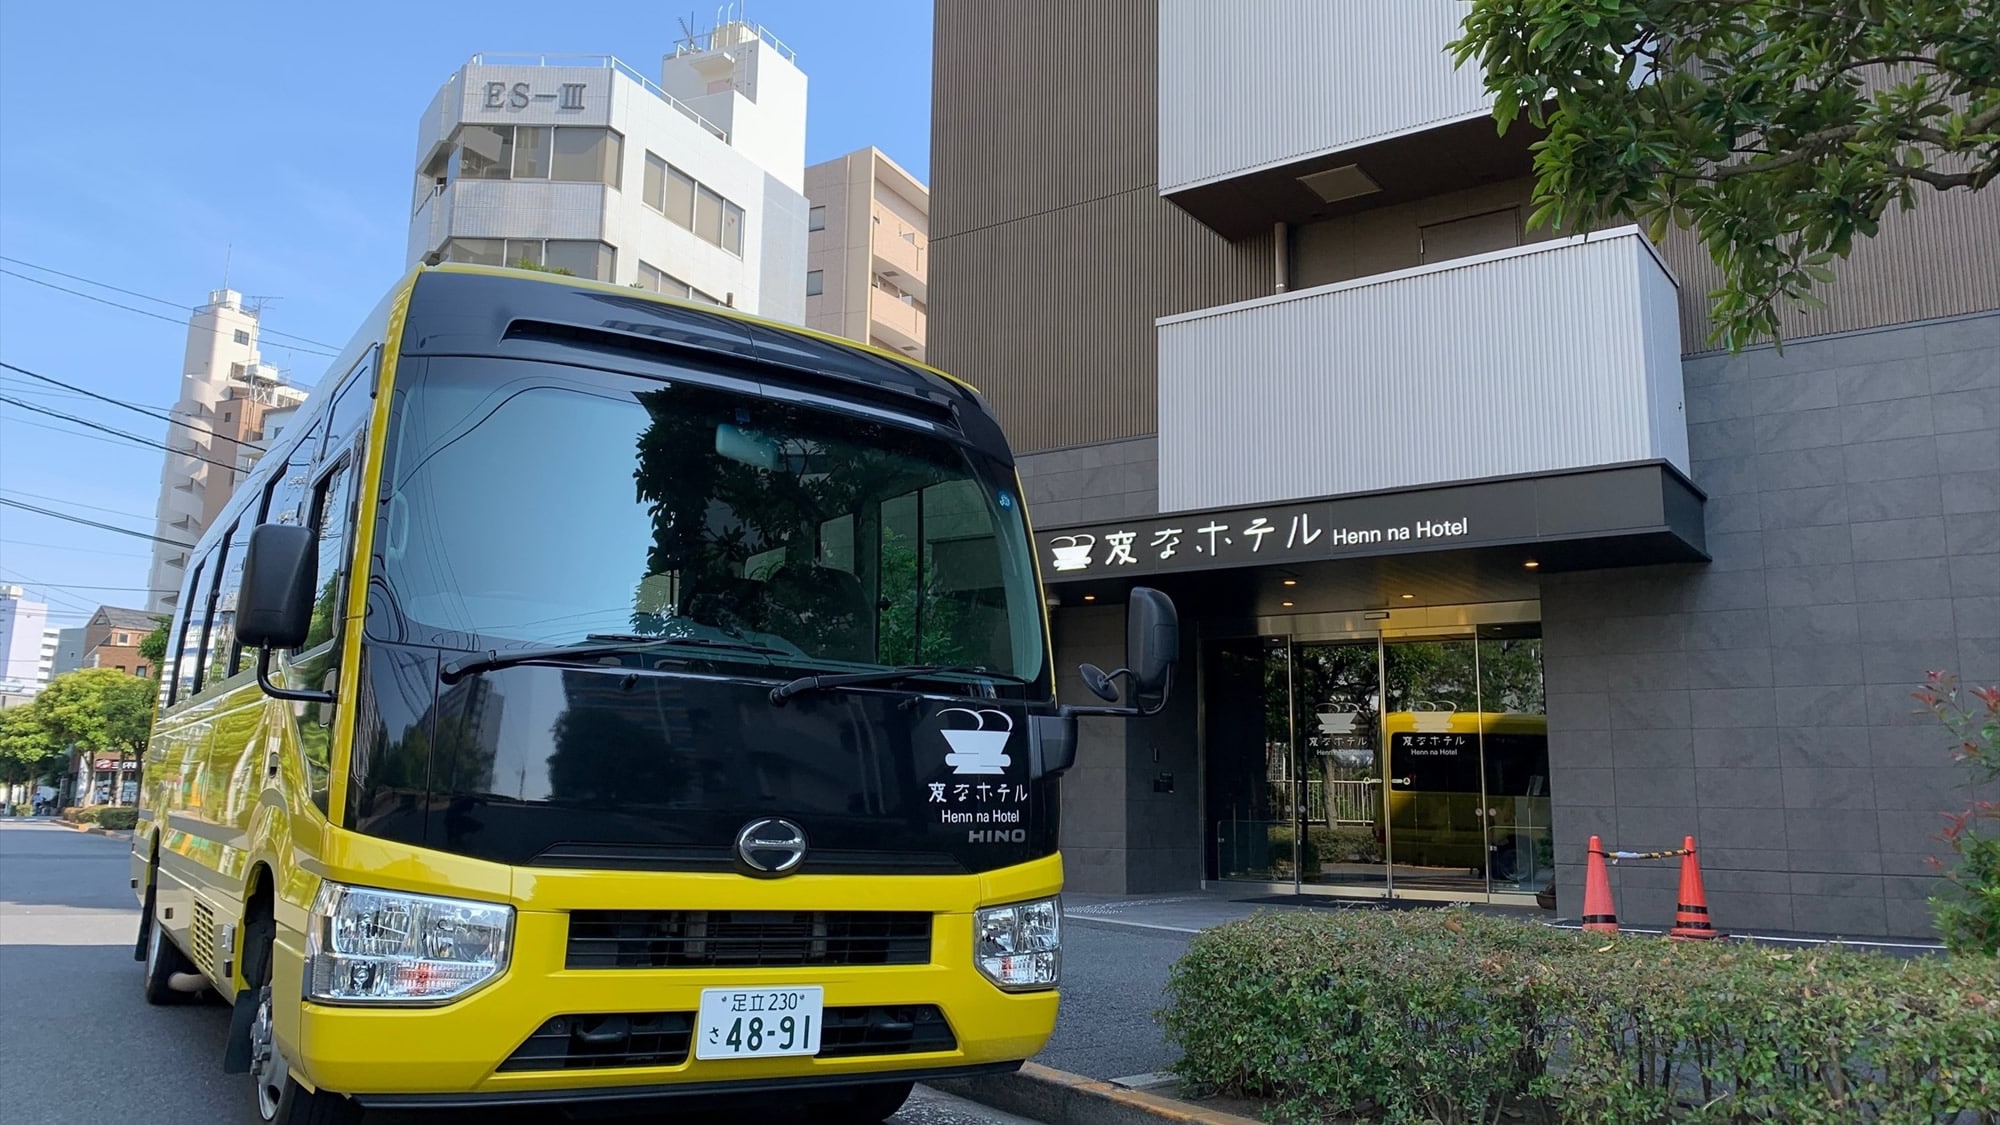 每天都有前往東京迪士尼度假區的免費穿梭巴士（約30分鐘）運行！